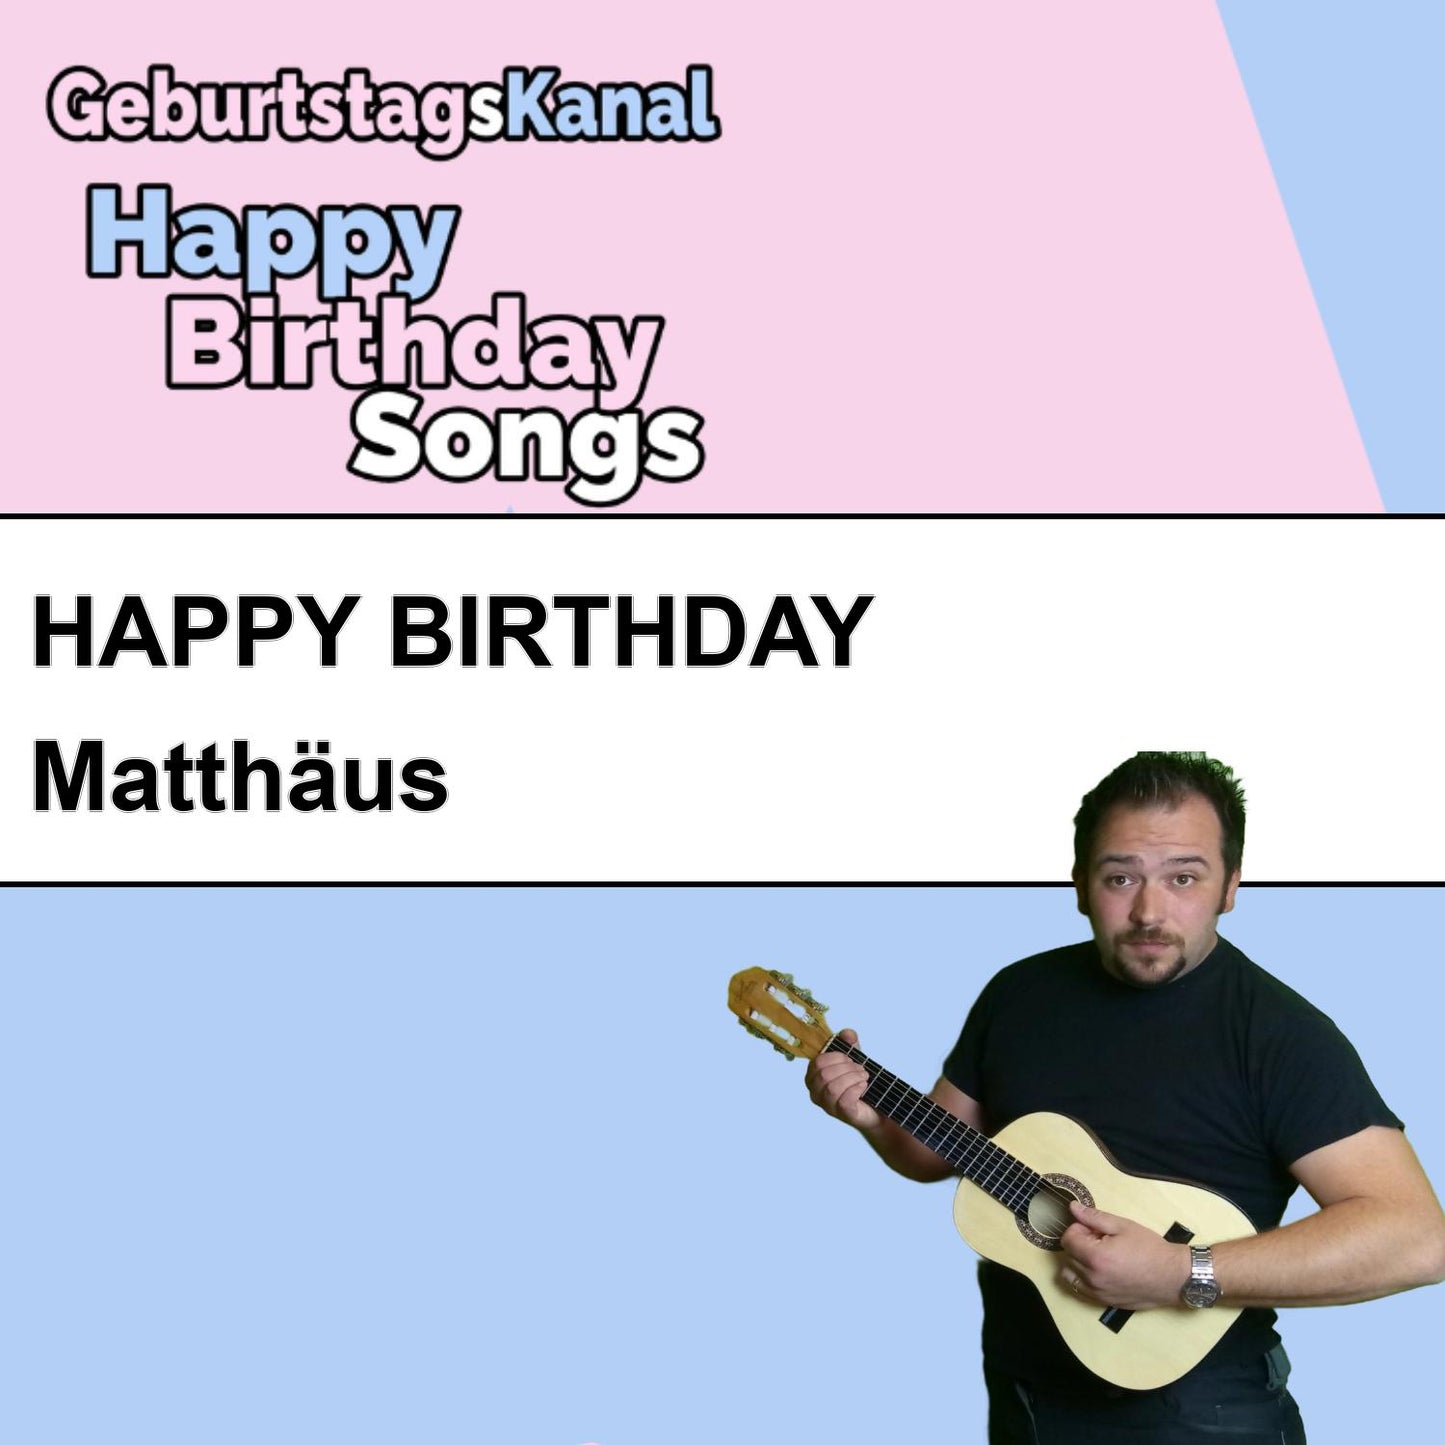 Produktbild Happy Birthday to you Matthäus mit Wunschgrußbotschaft